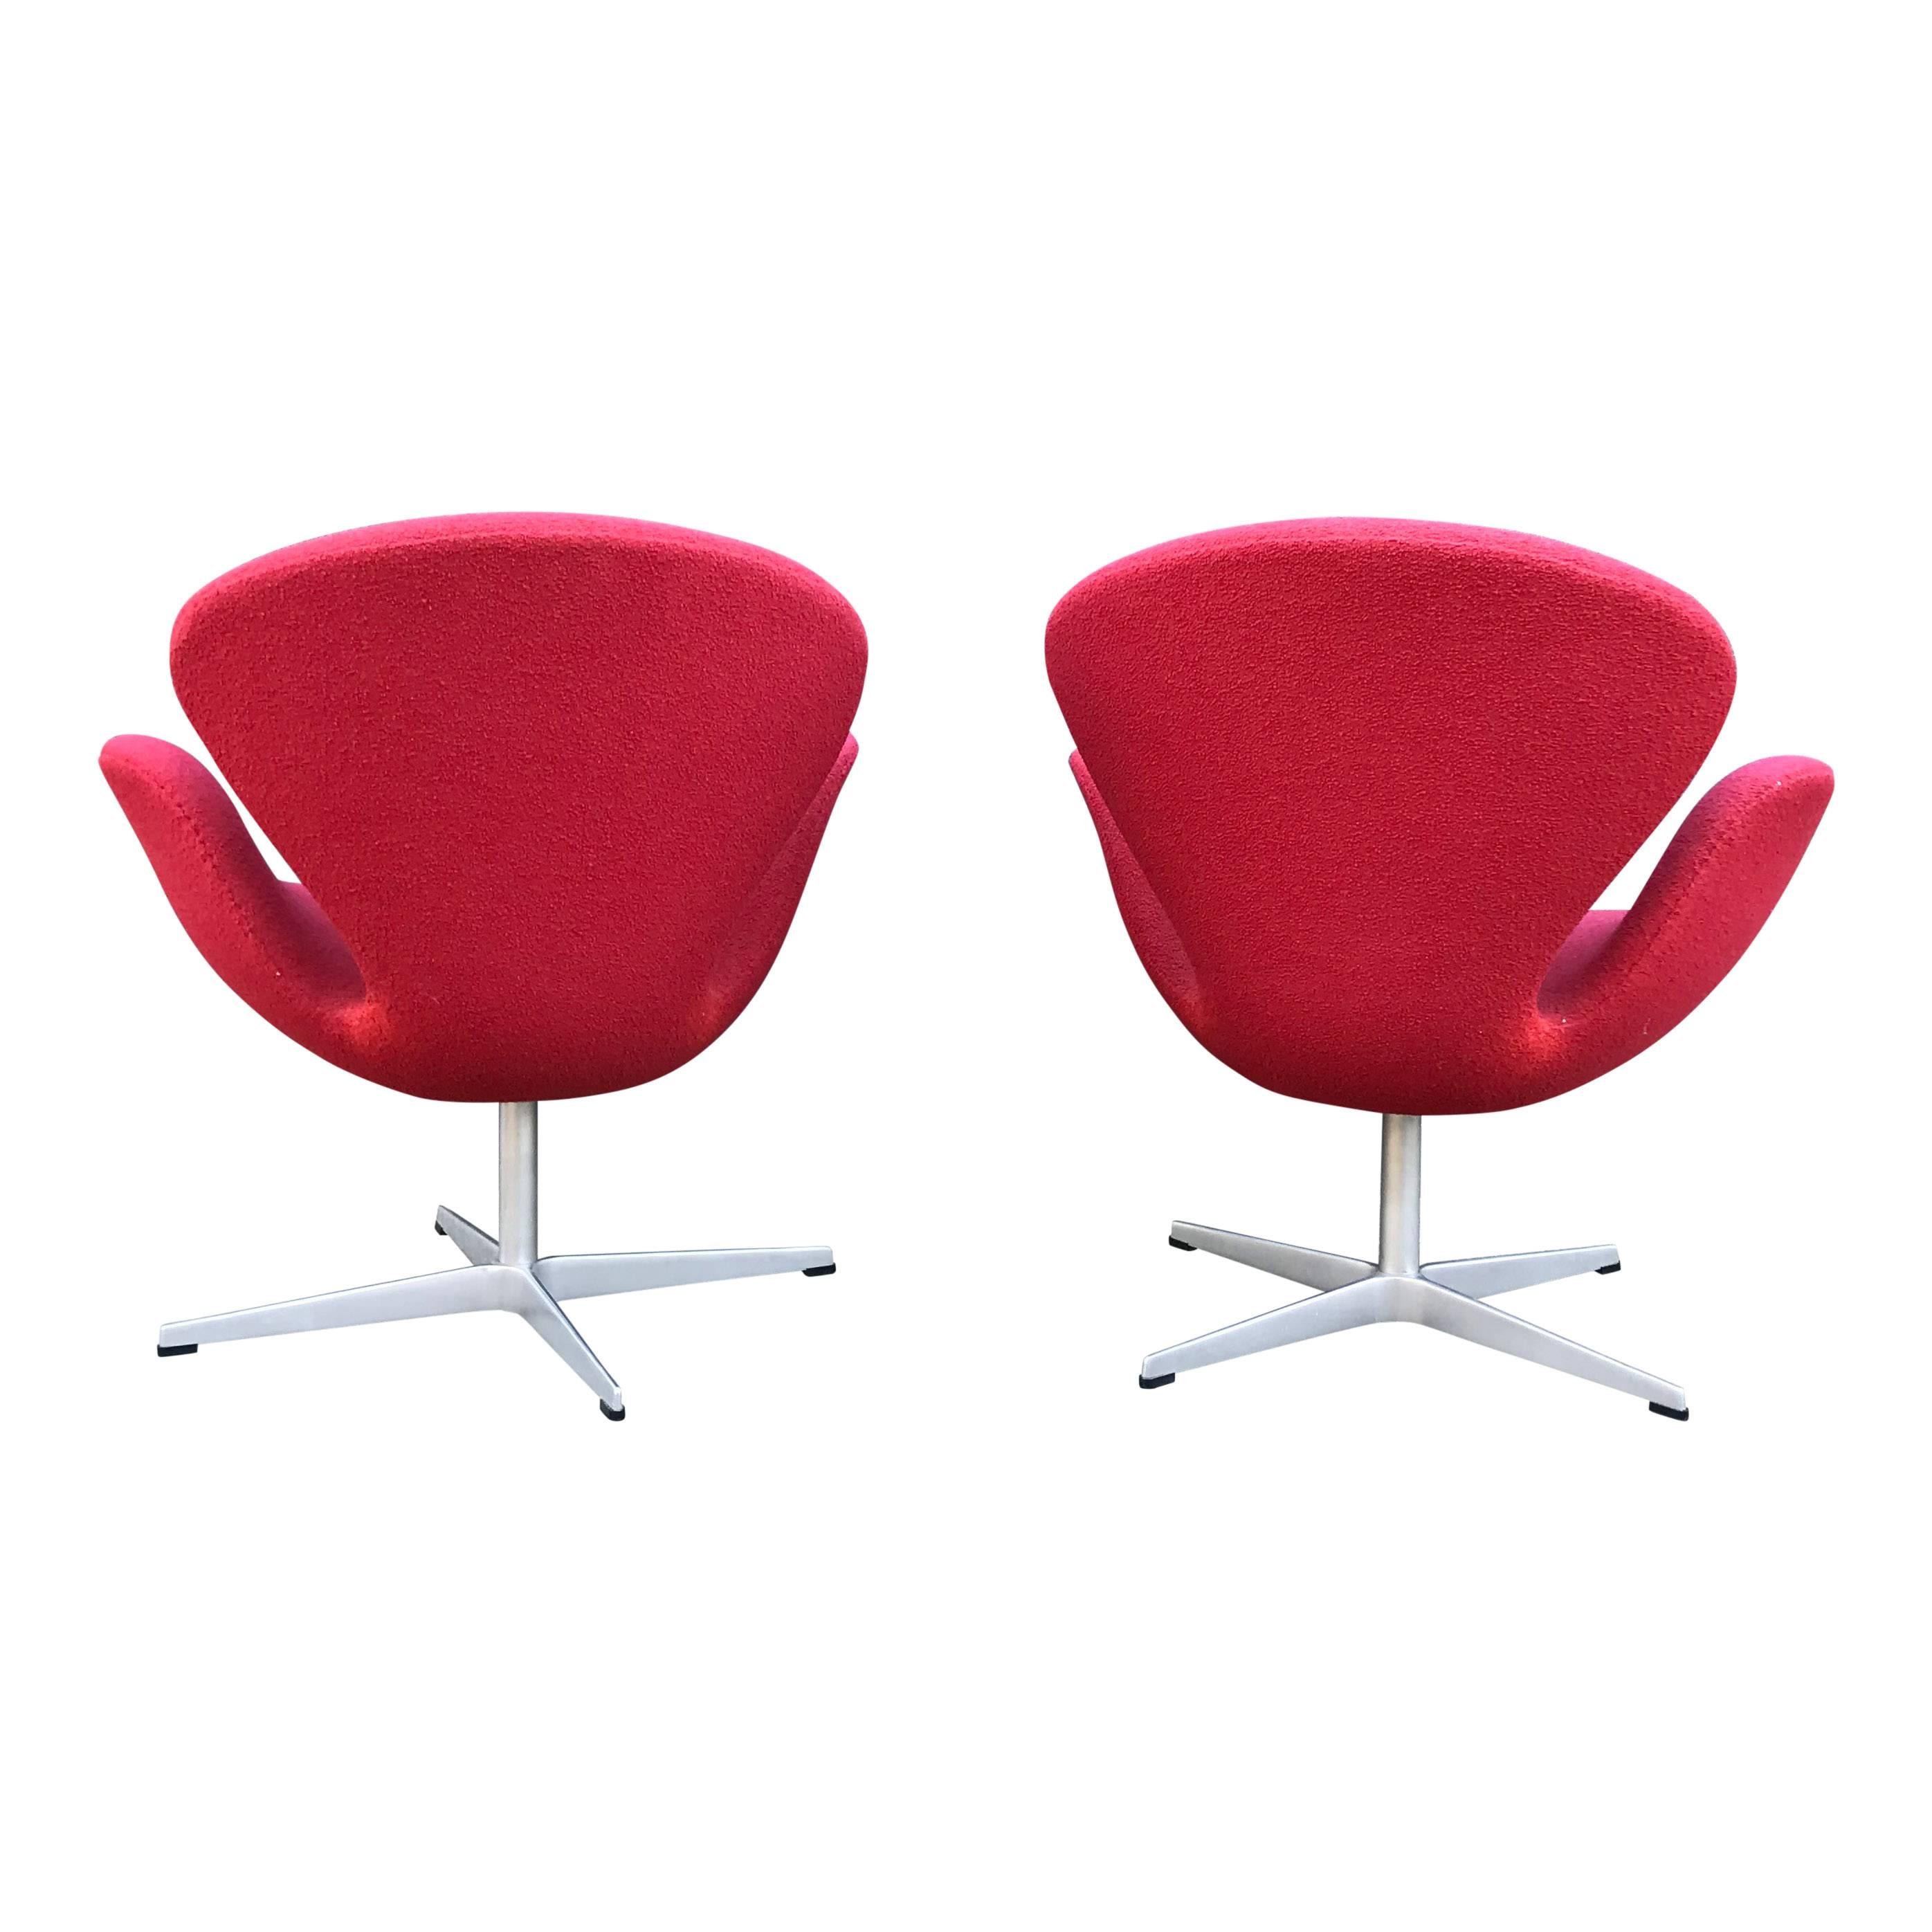 Arne Jacobsen for Fritz Hansen Danish Modern Swan Chairs 1